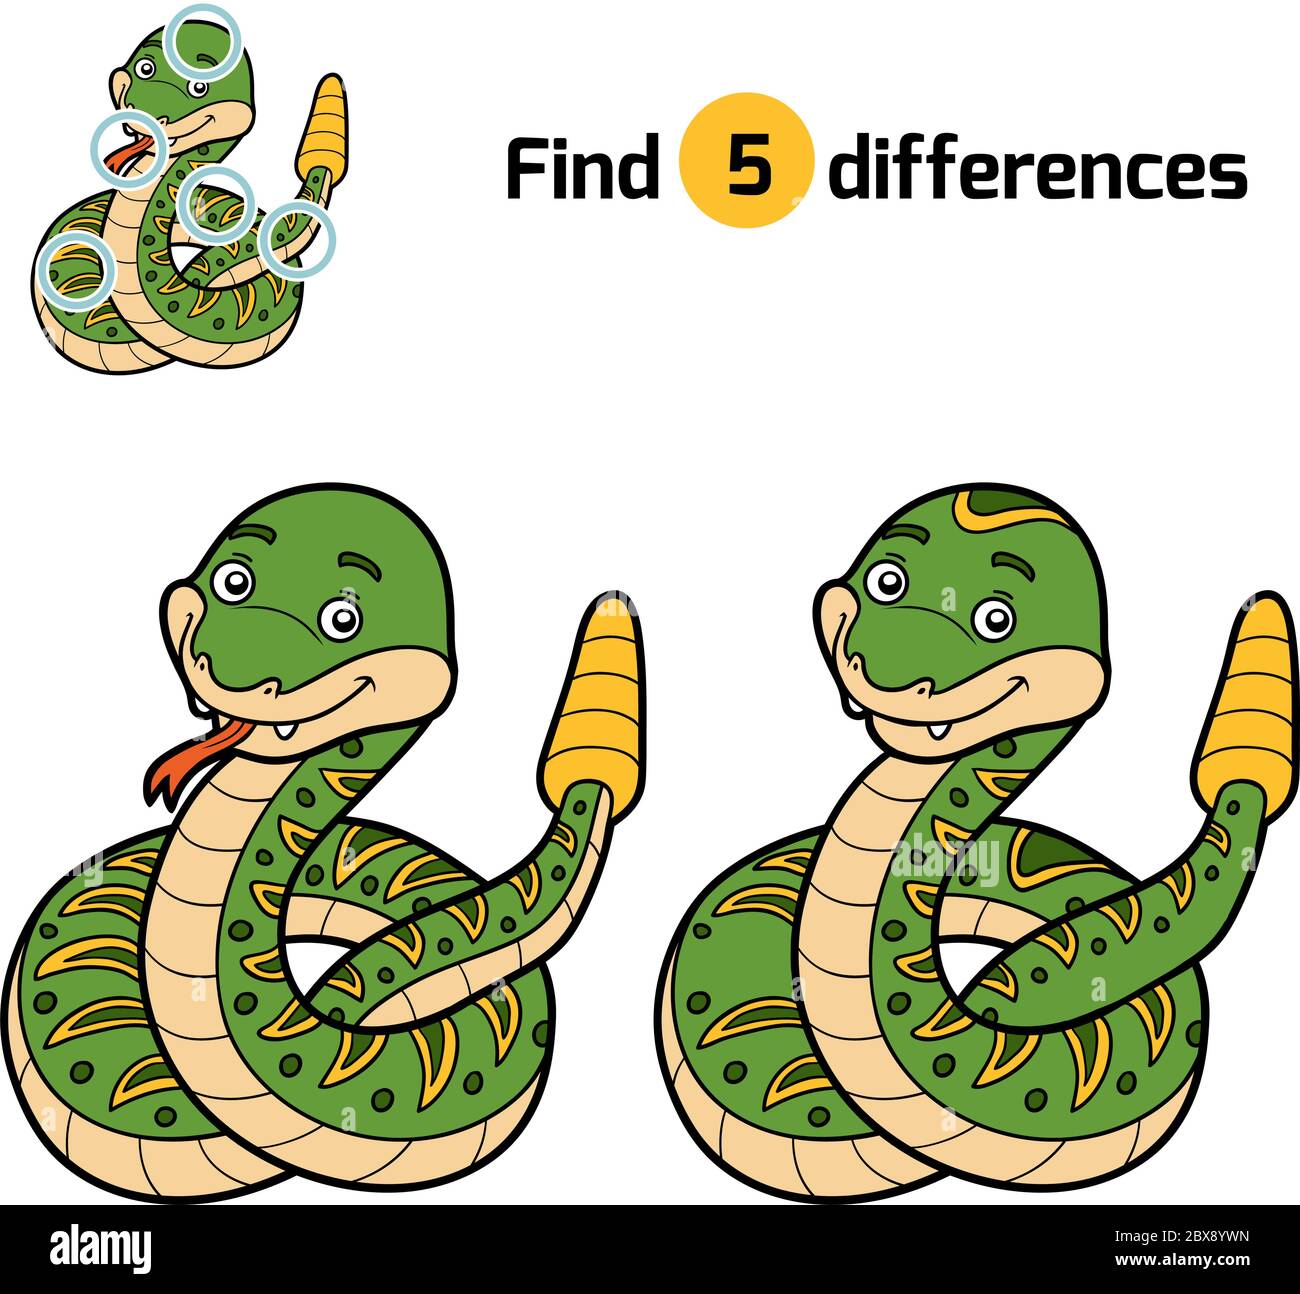 Finden Sie Unterschiede, Bildung Spiel für Kinder, Rattle Schlange  Stock-Vektorgrafik - Alamy